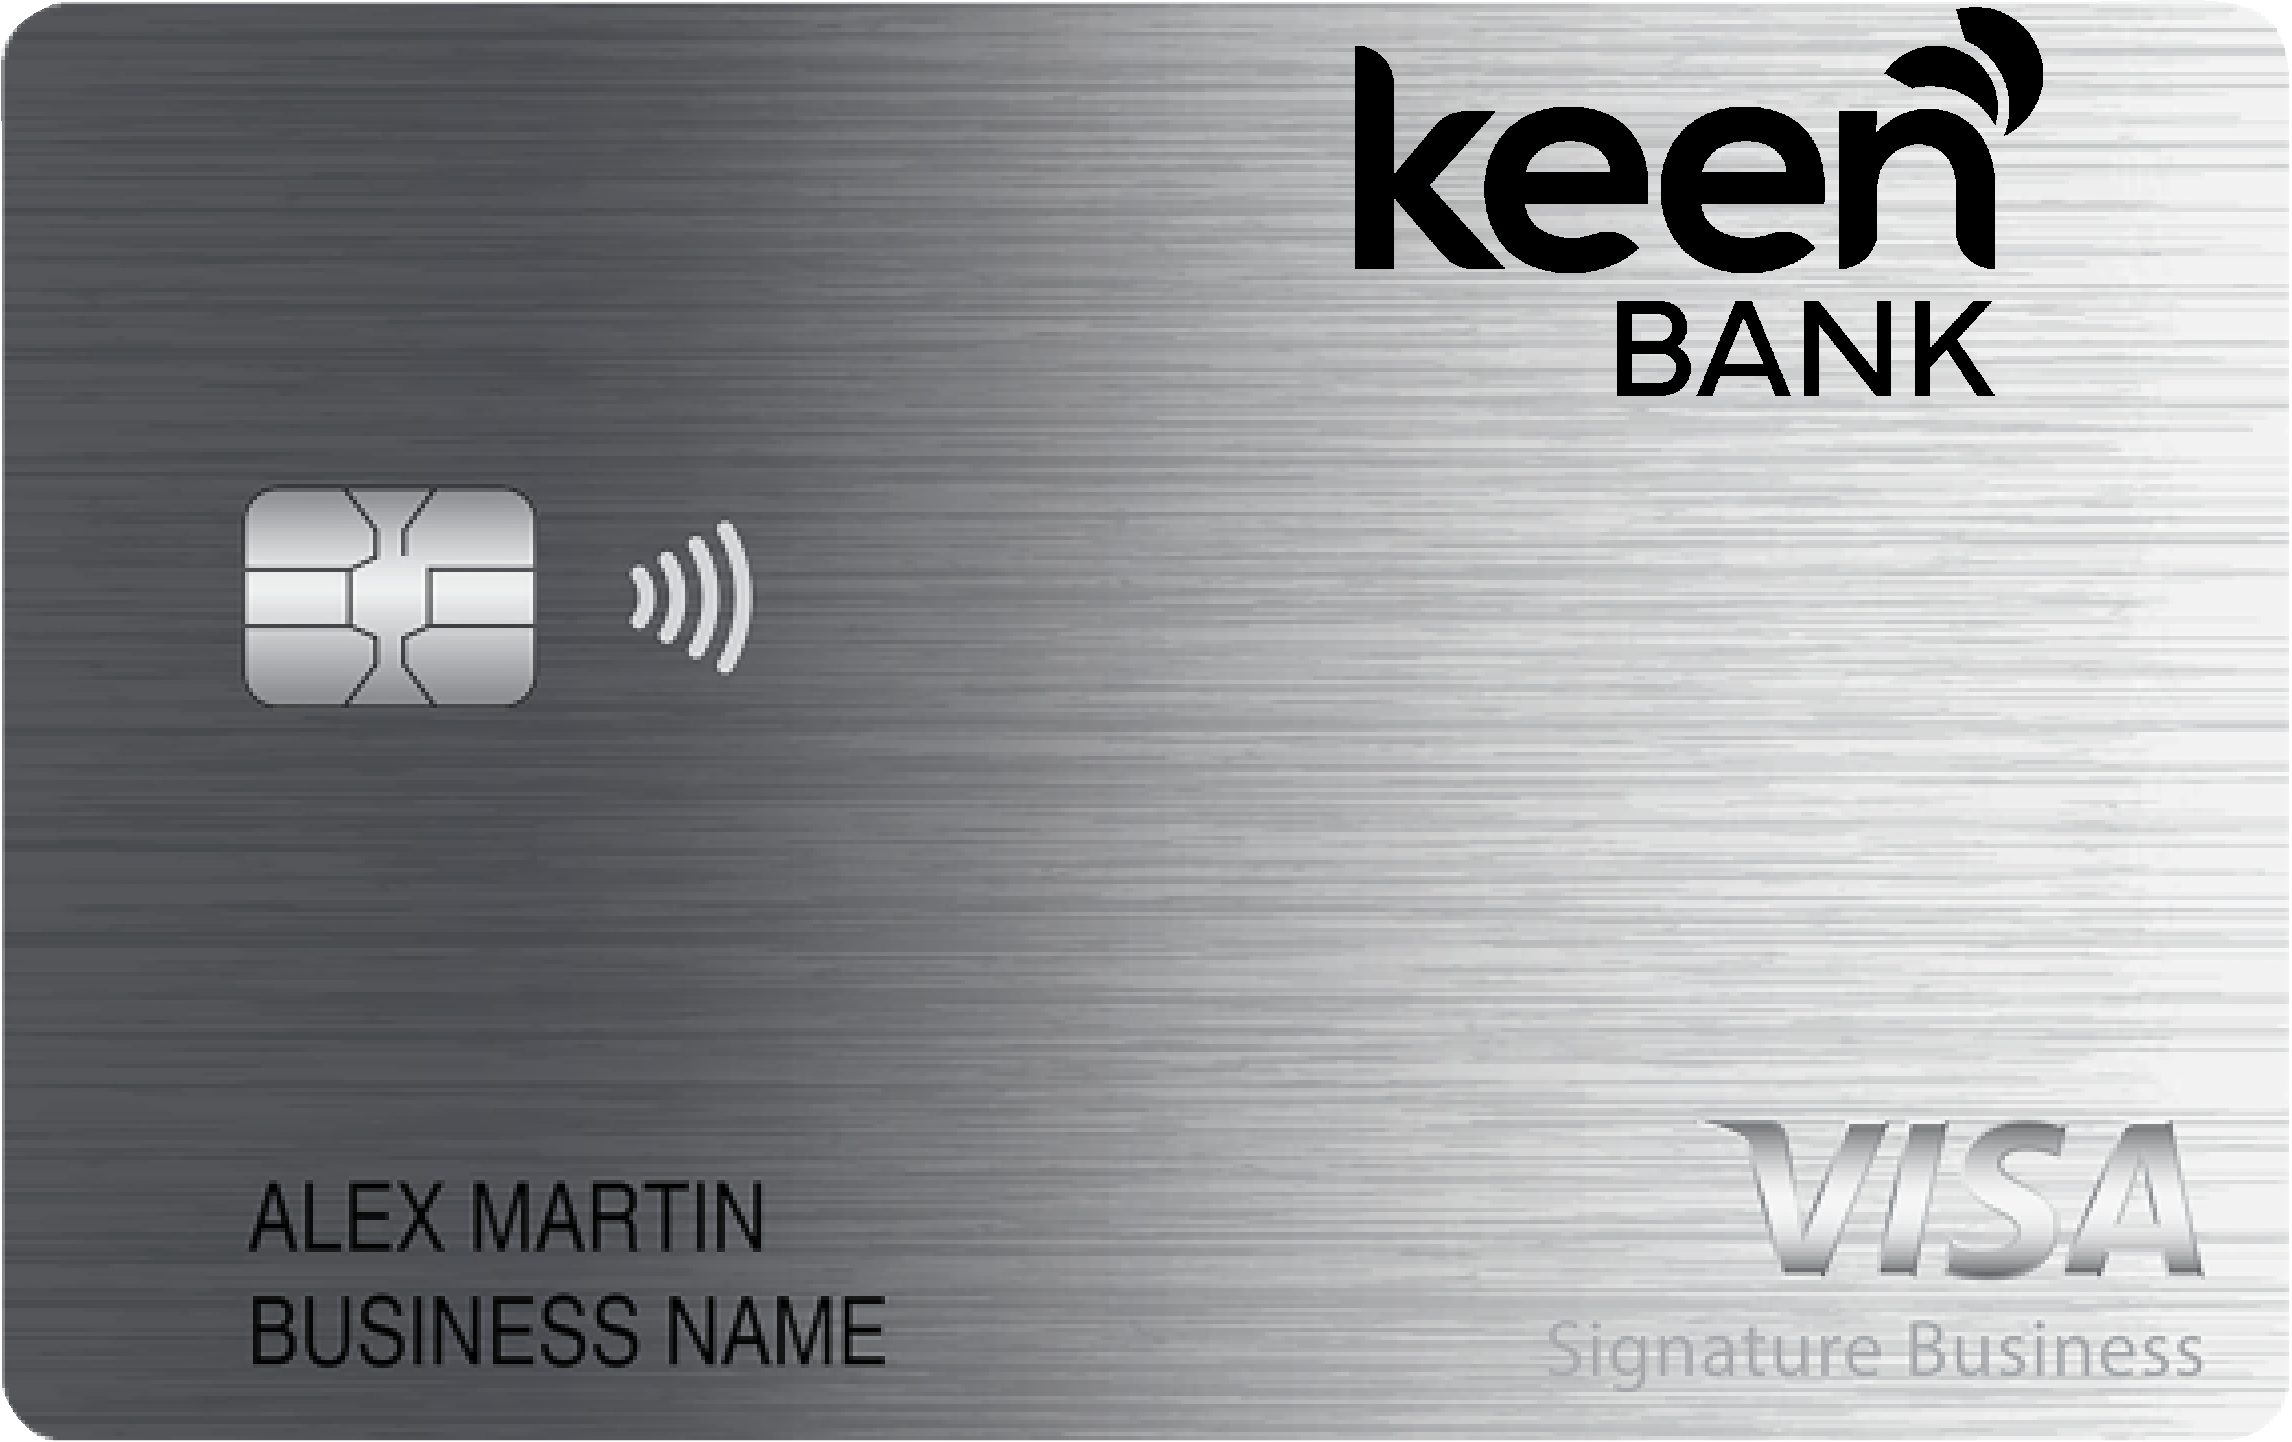 Keen Bank Smart Business Rewards Card